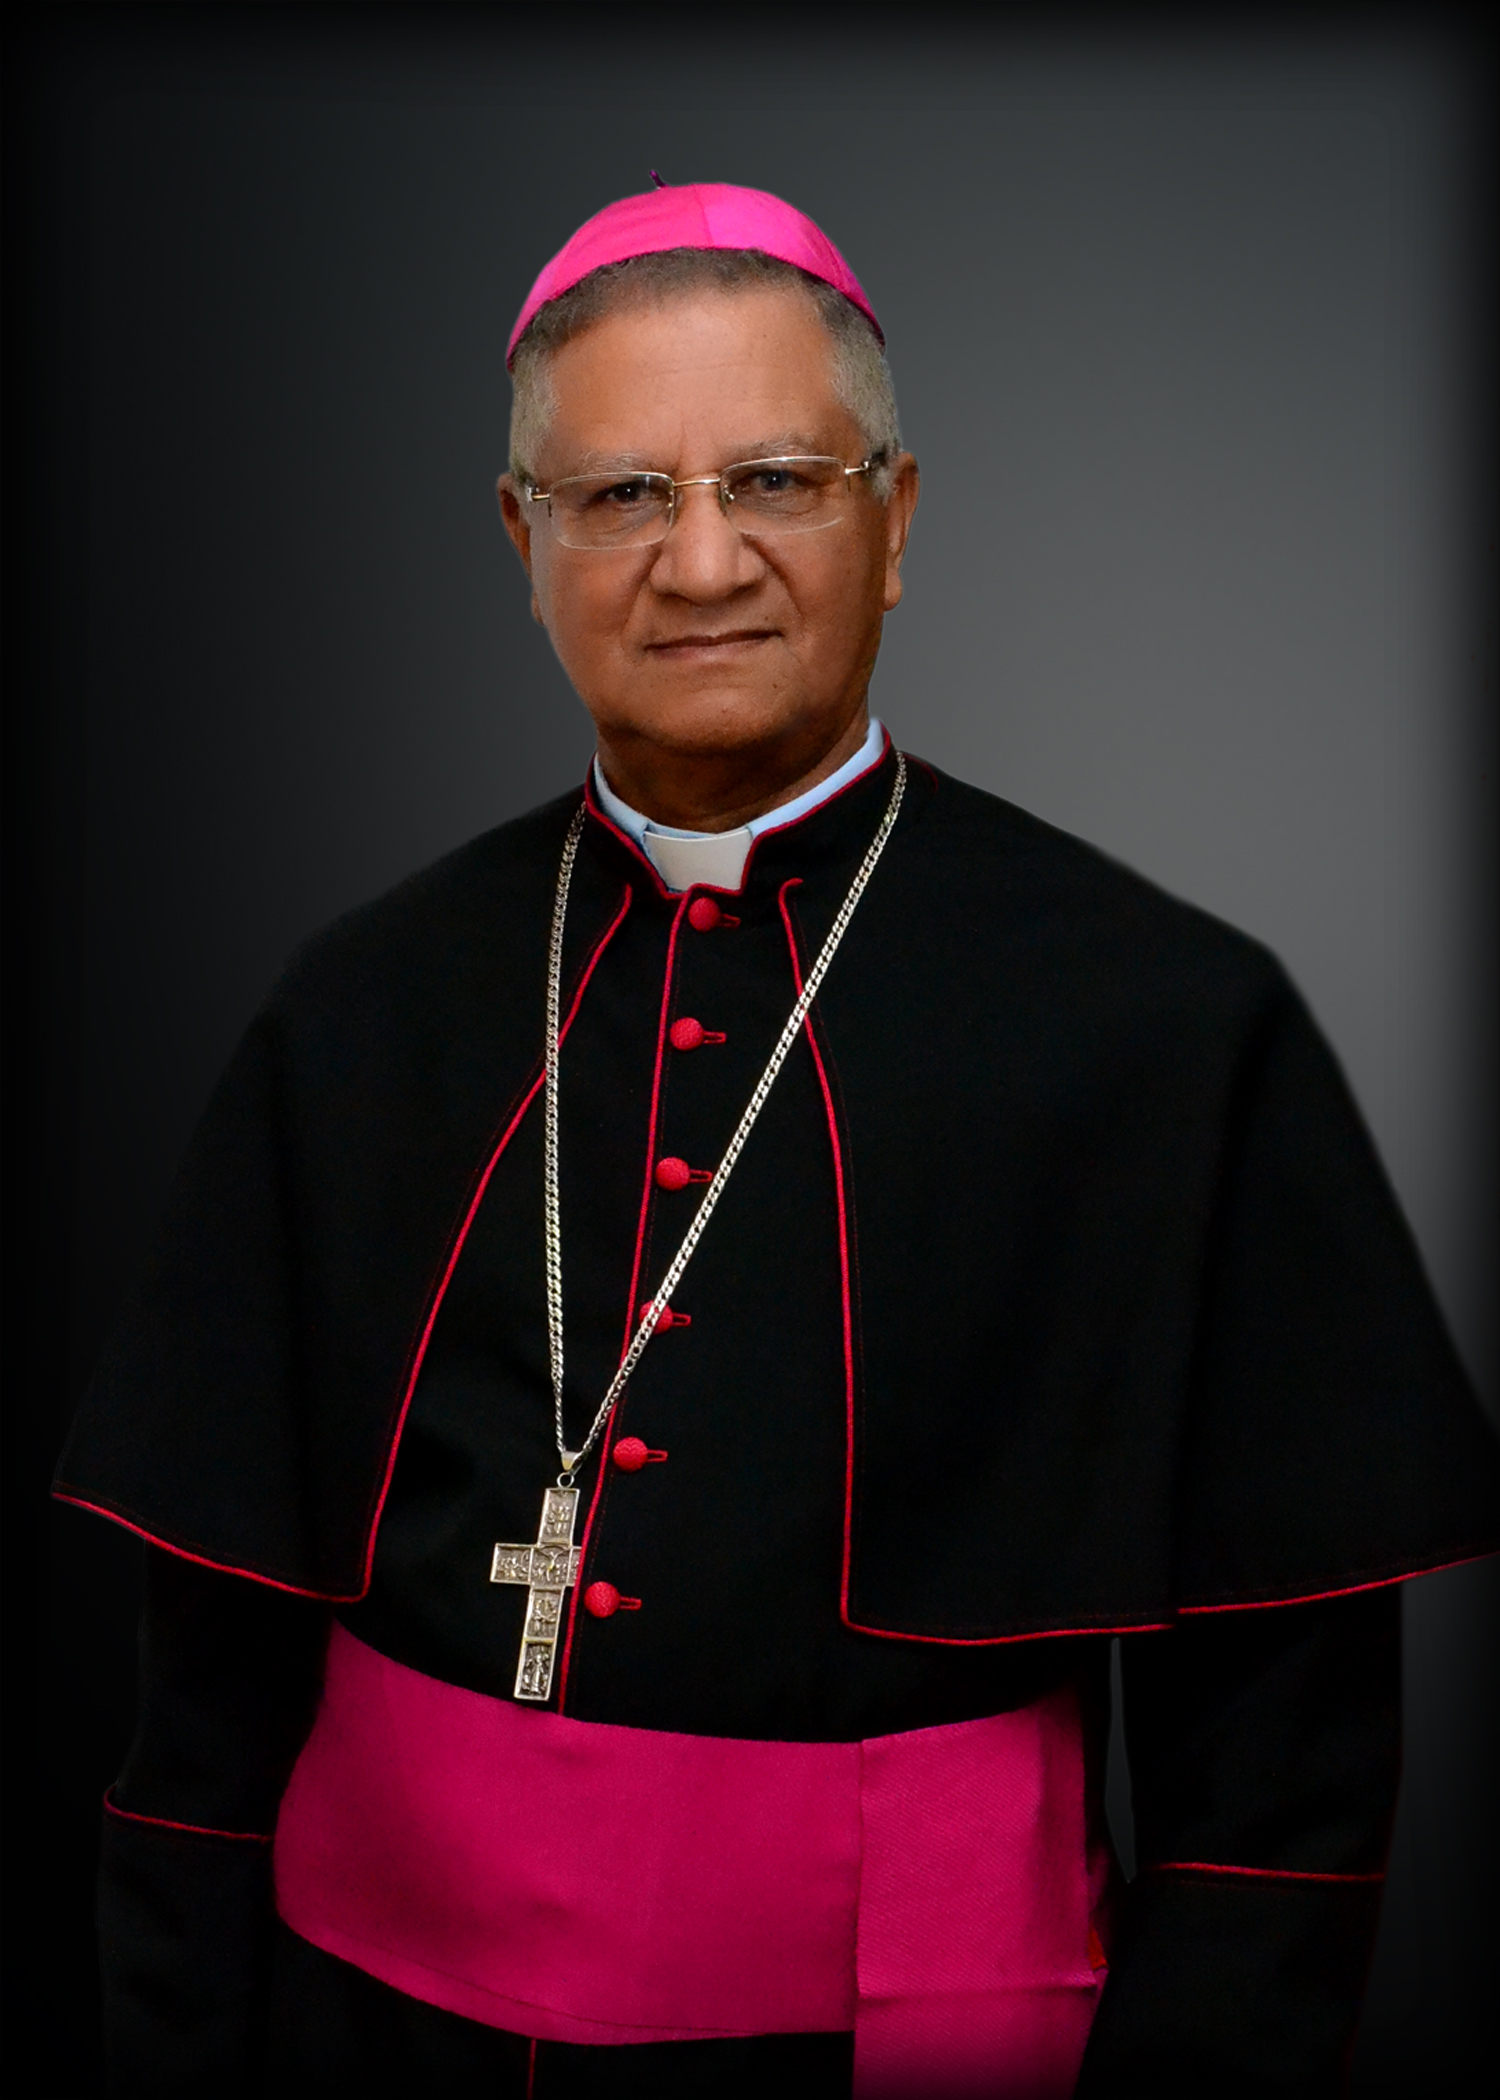 Obispo pide votar contra política clientelar 